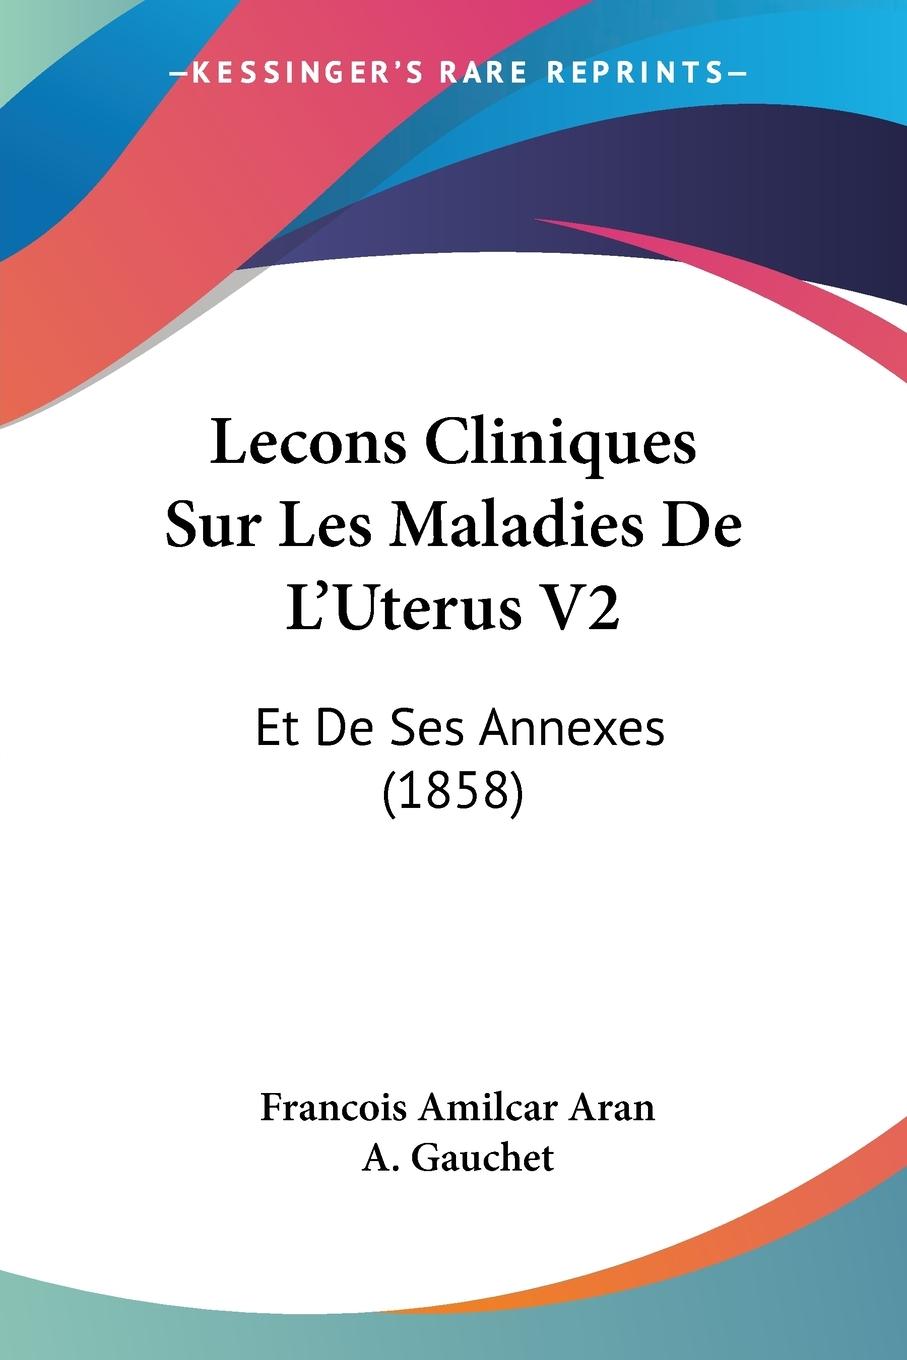 Lecons Cliniques Sur Les Maladies De L Uterus V2 - Aran, Francois Amilcar Gauchet, A.